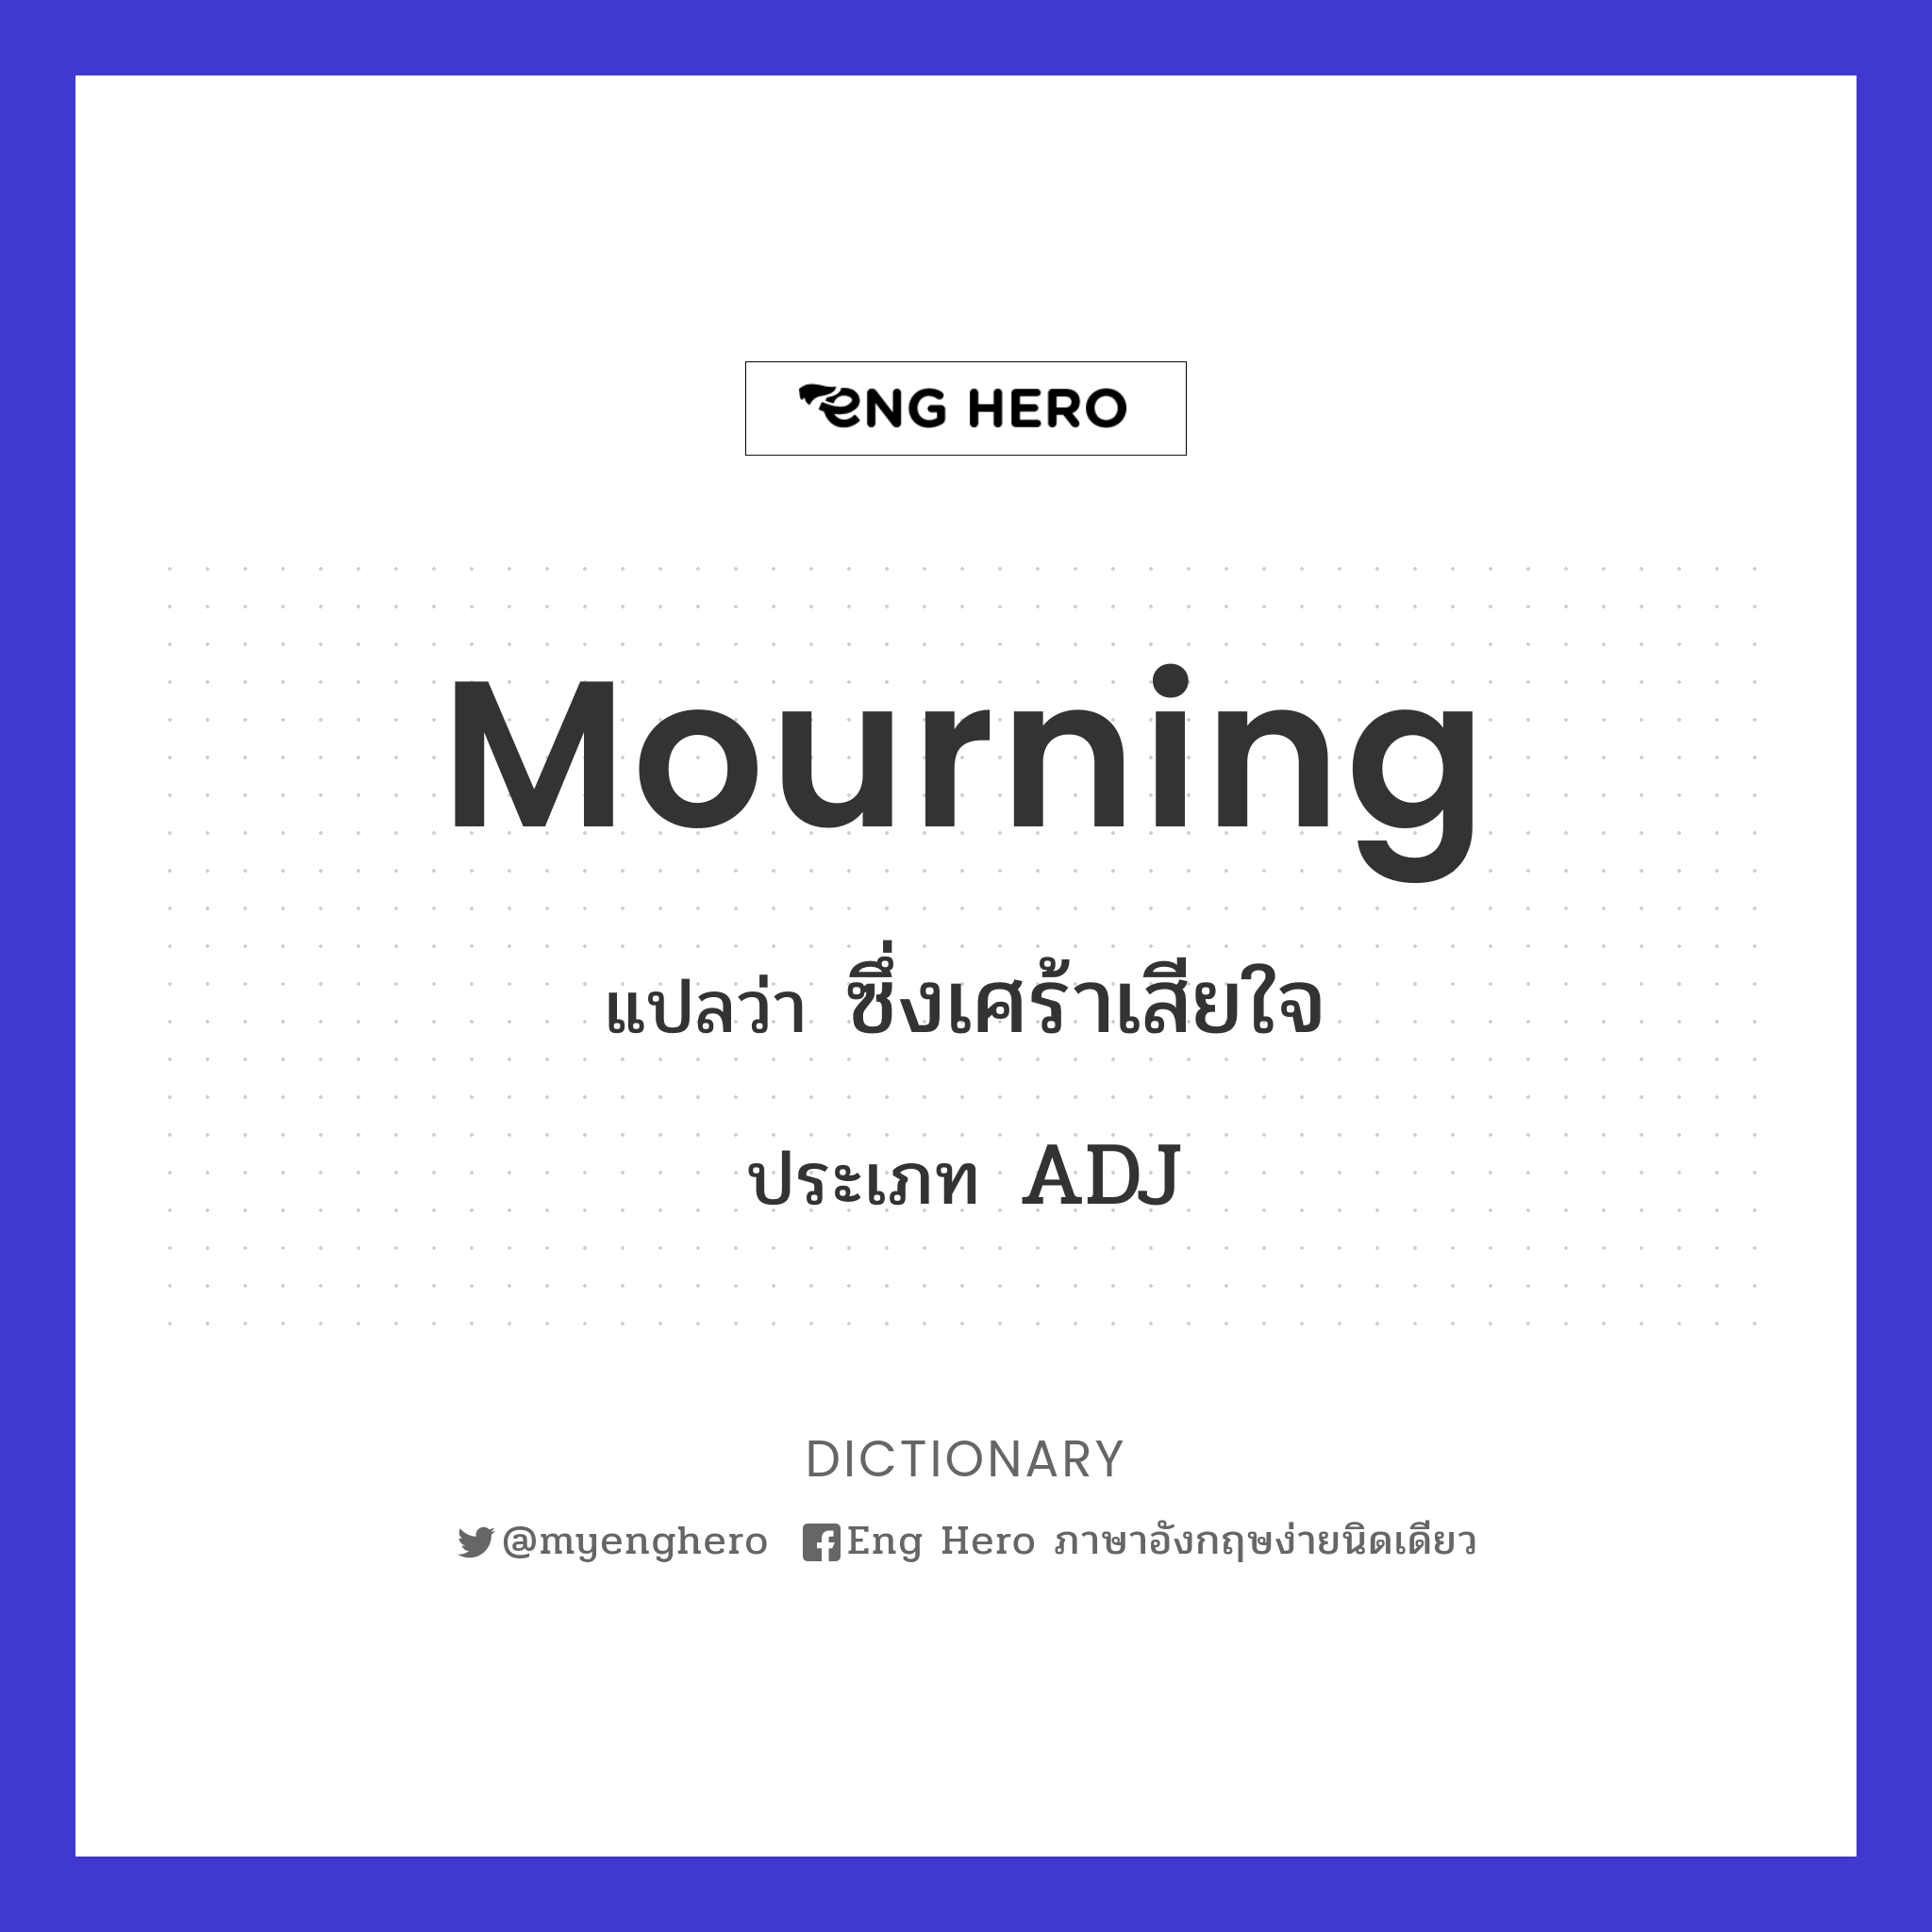 mourning